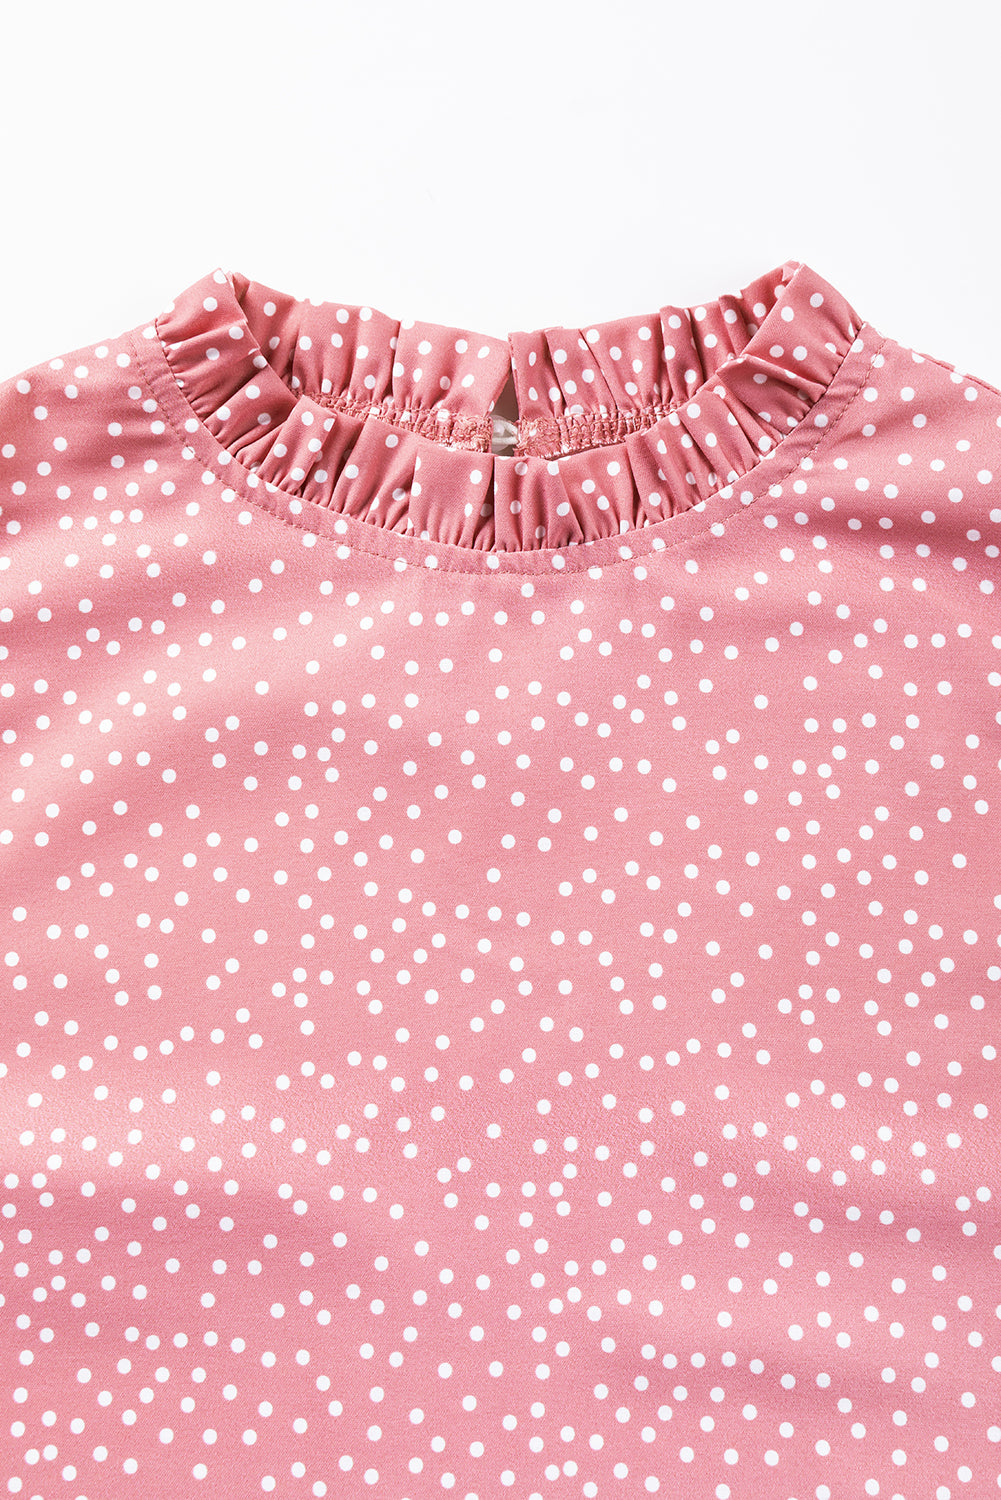 Rožnata bluza s pikami in naborki, s plapolastimi rokavi in ​​ovratnikom